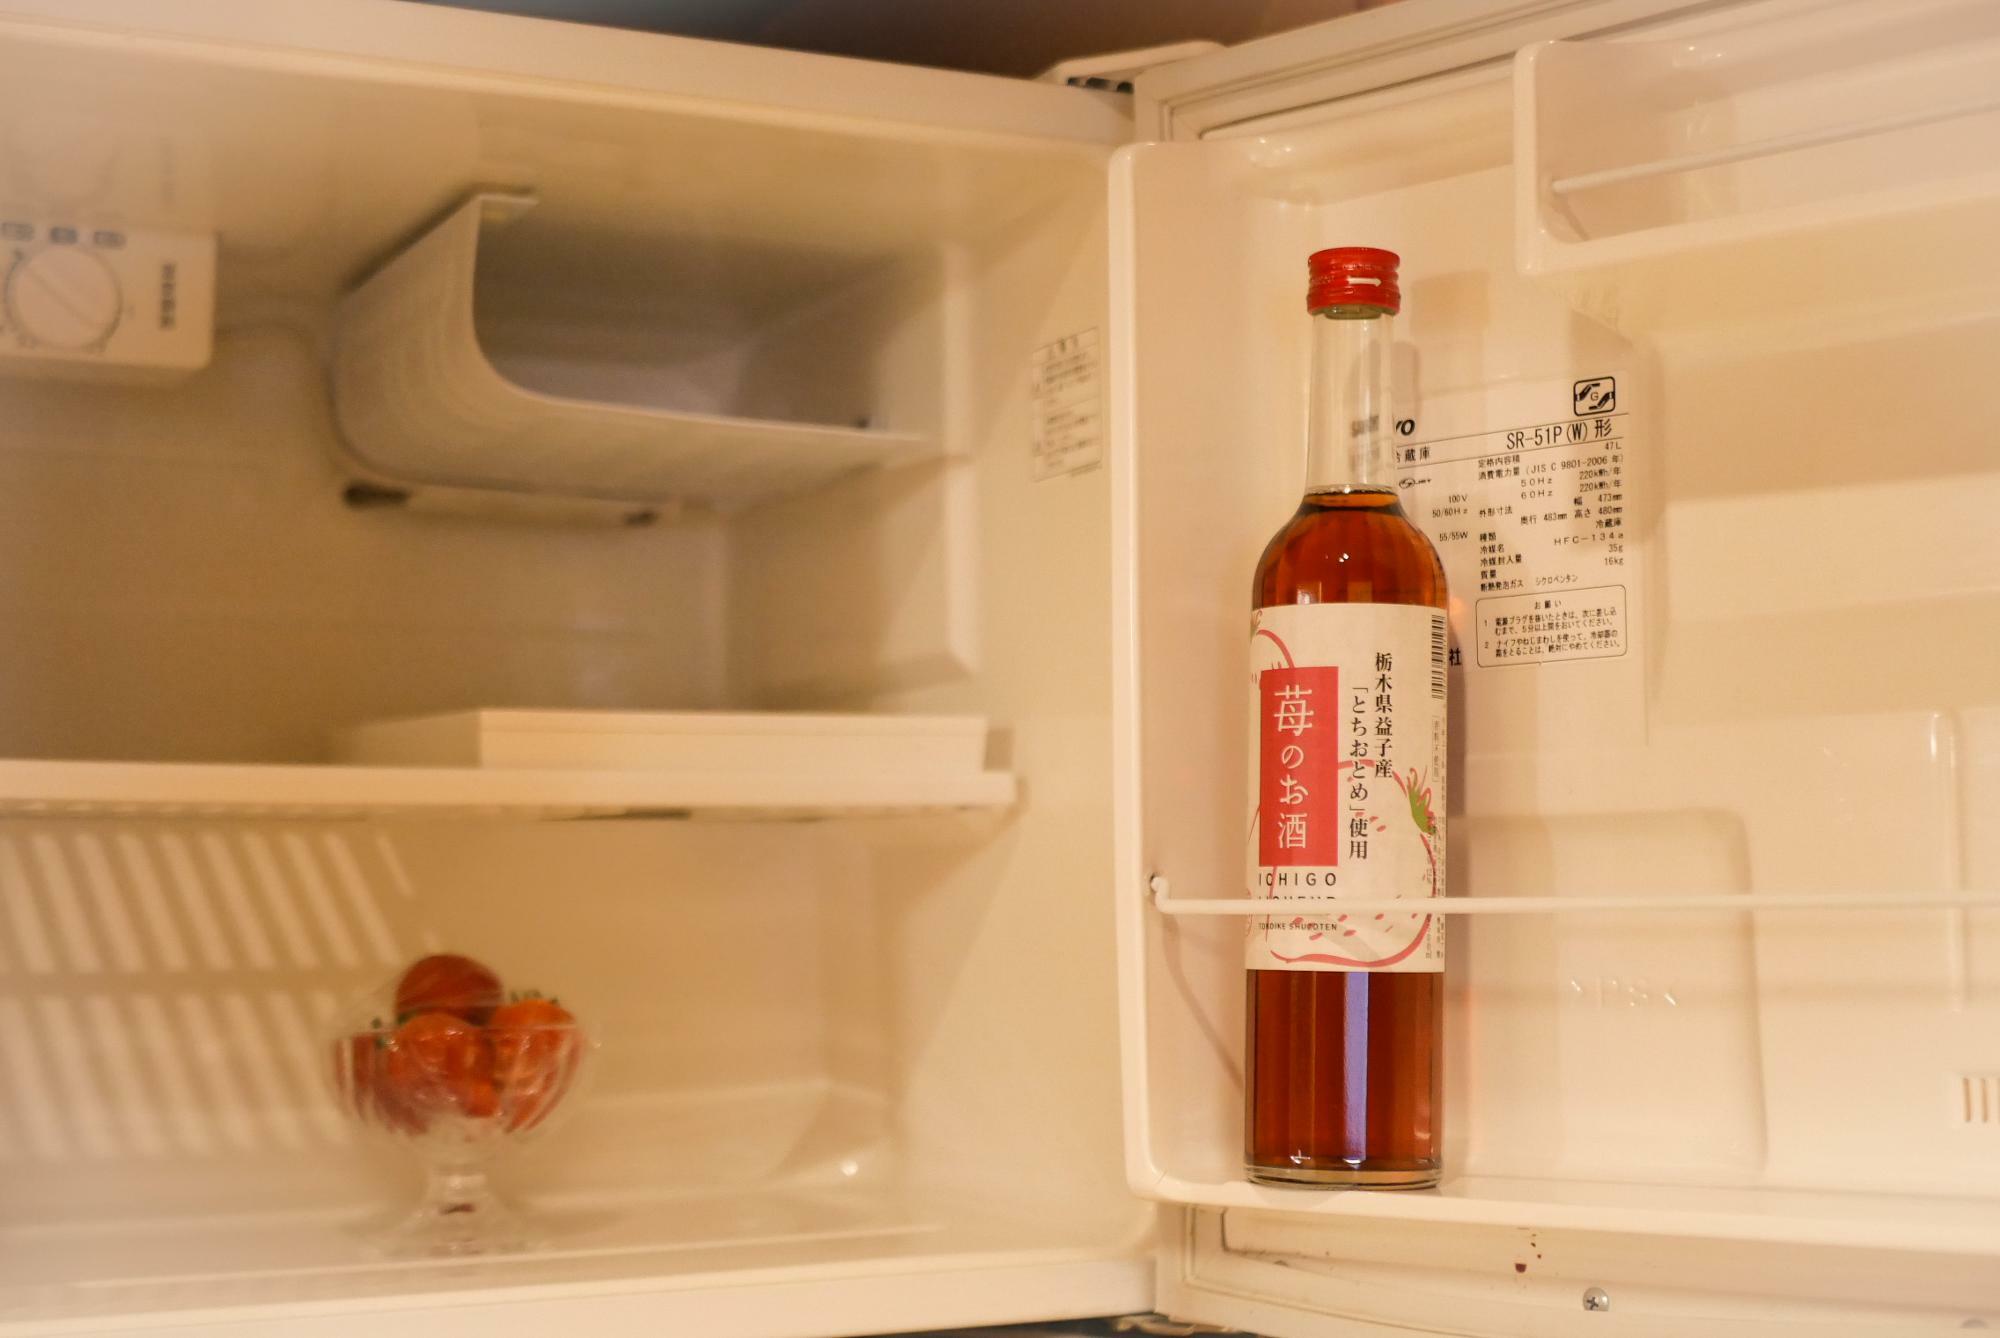 冷蔵庫には苺のお酒とフレッシュないちごが入っている